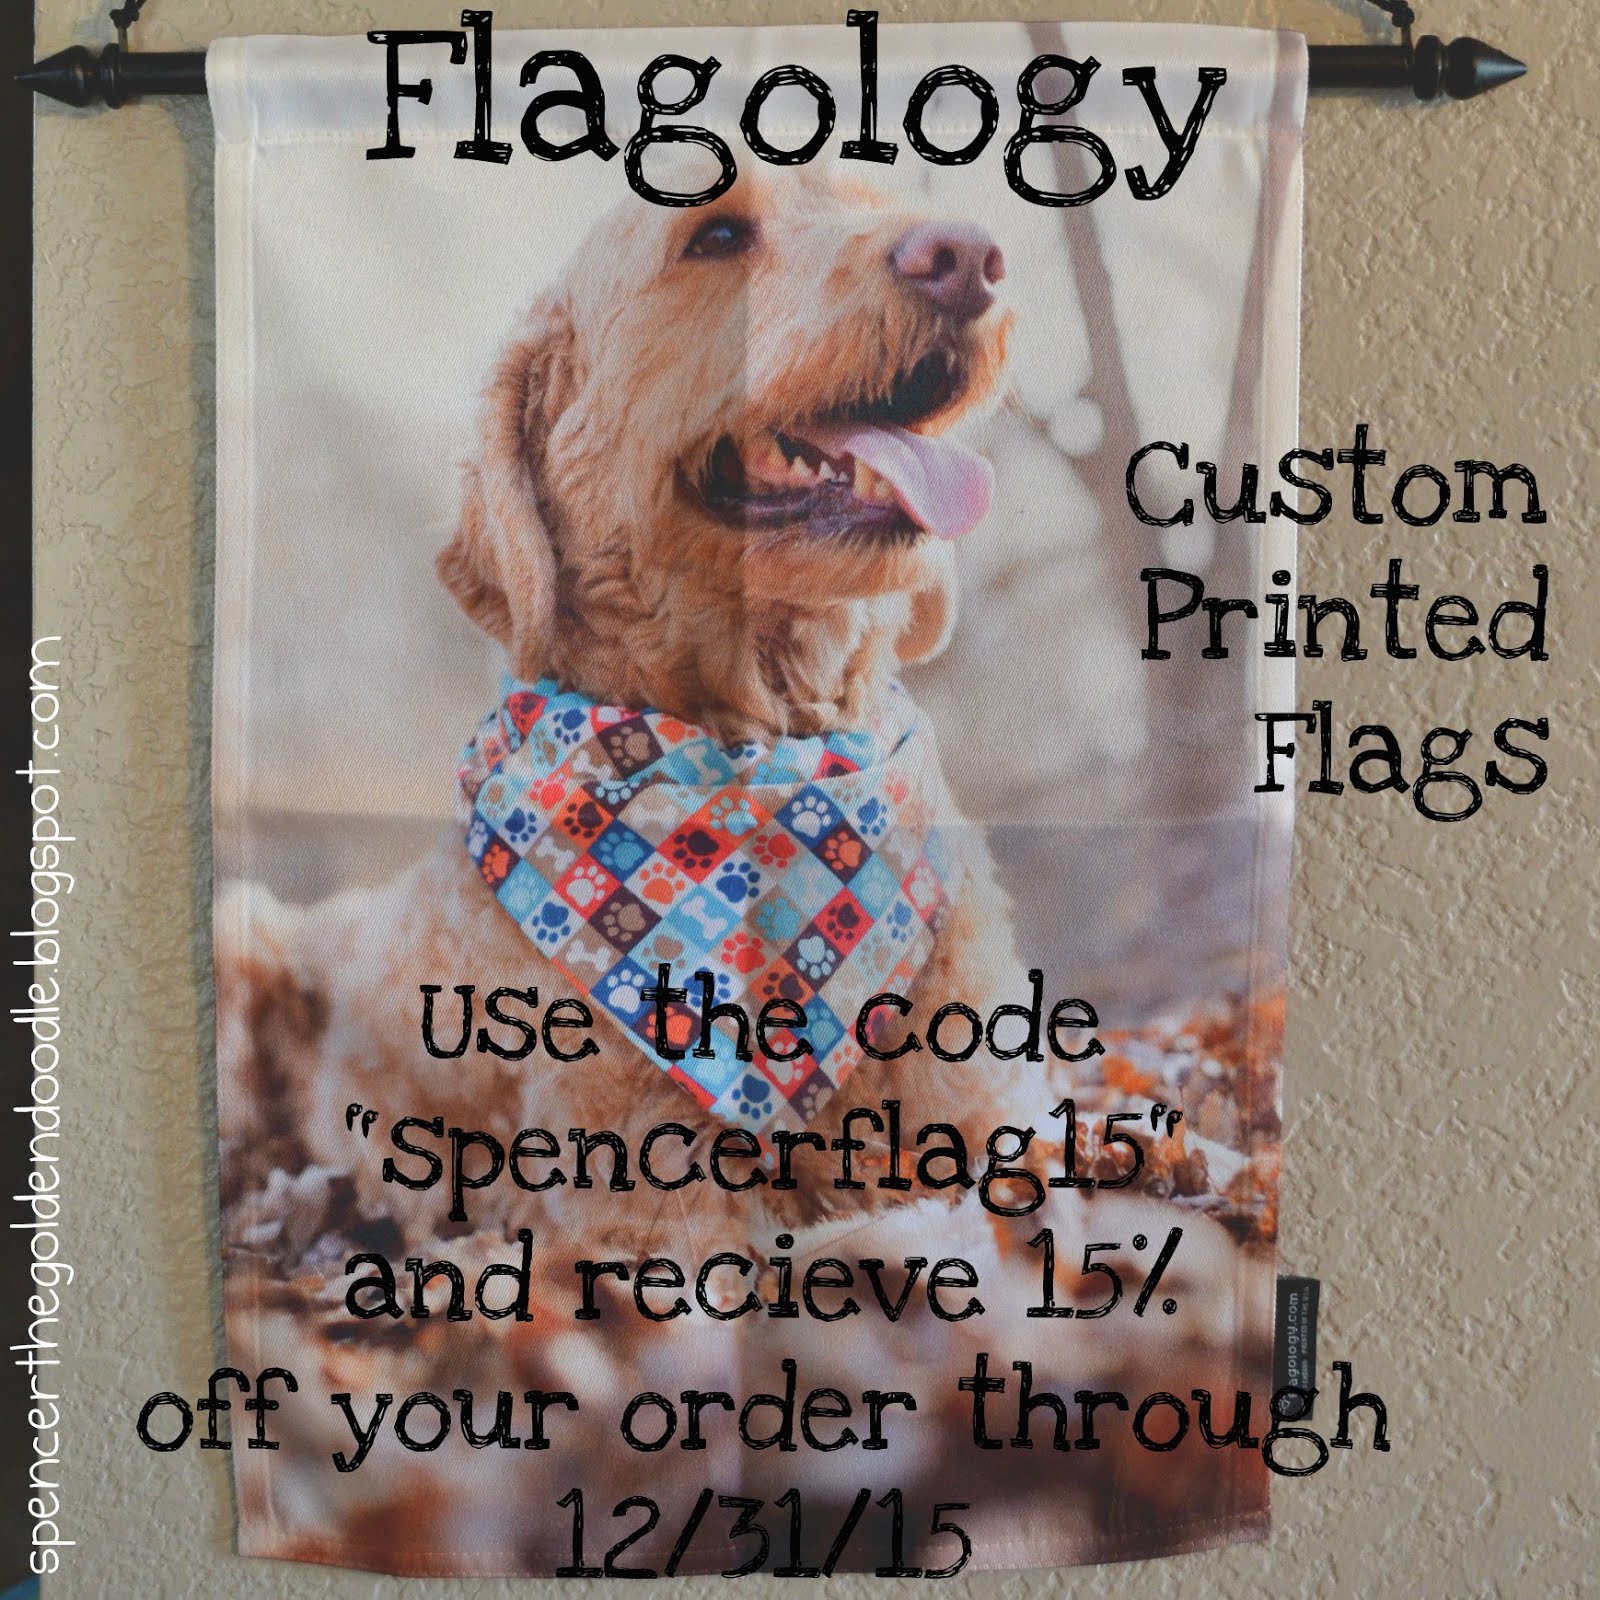 Flagology